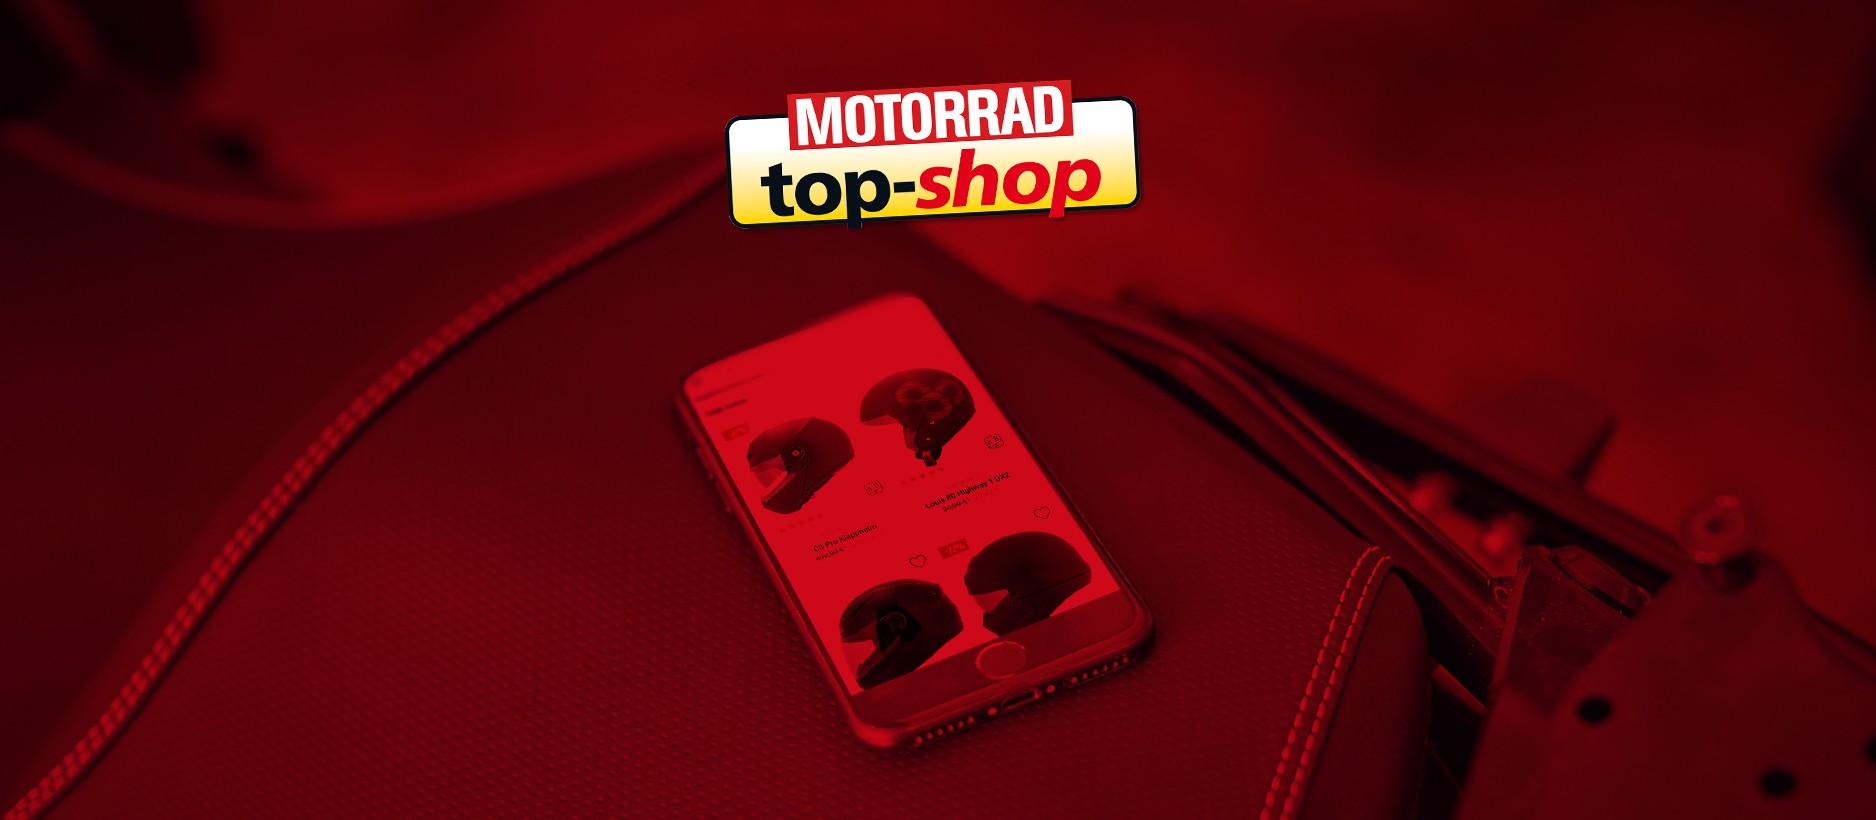 Der Louis Onlineshop ist Testsieger! – Von der Zeitschrift MOTORRAD zum Top-Shop 2020 gewählt